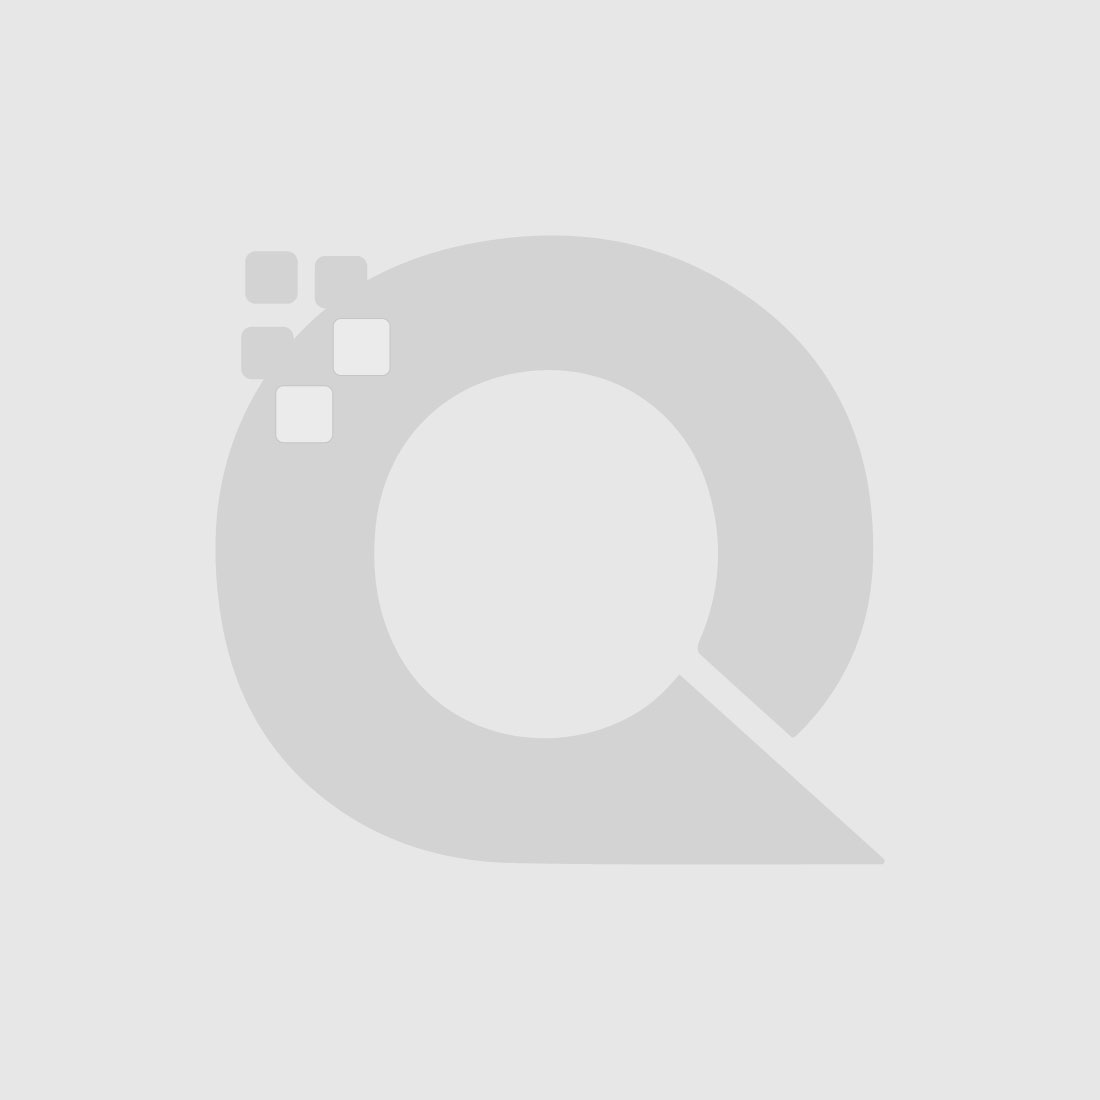 Guerniss Paris Velvet Matte Lipstick - GS031 - 3.5g